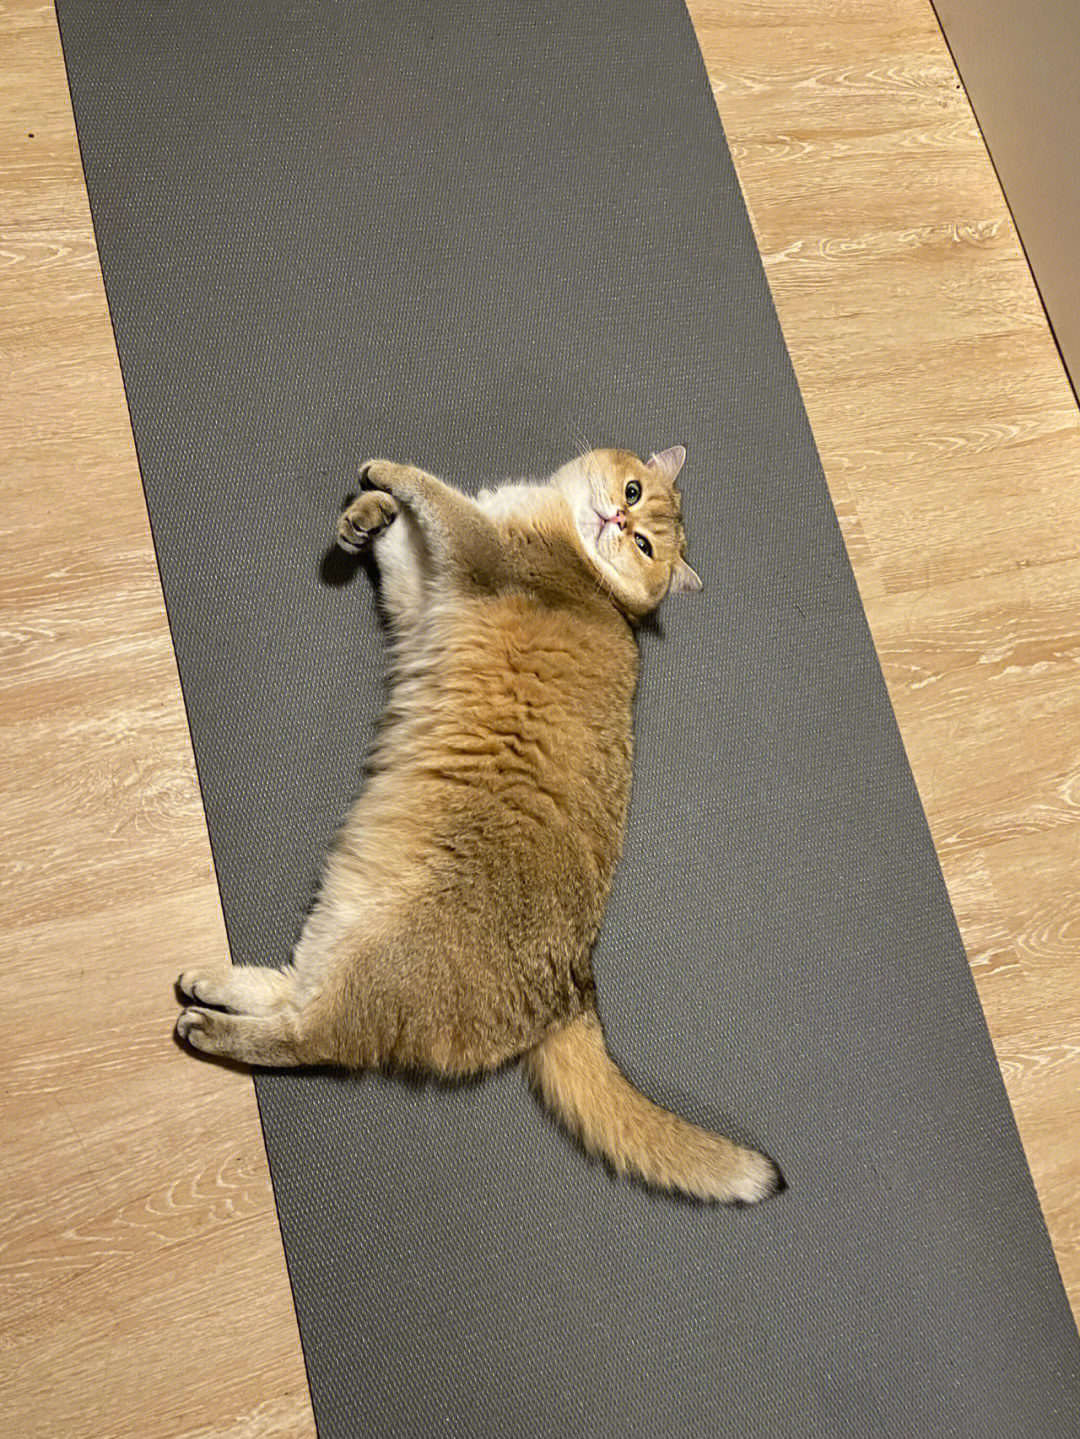 瑜伽垫睡觉搞笑图片图片